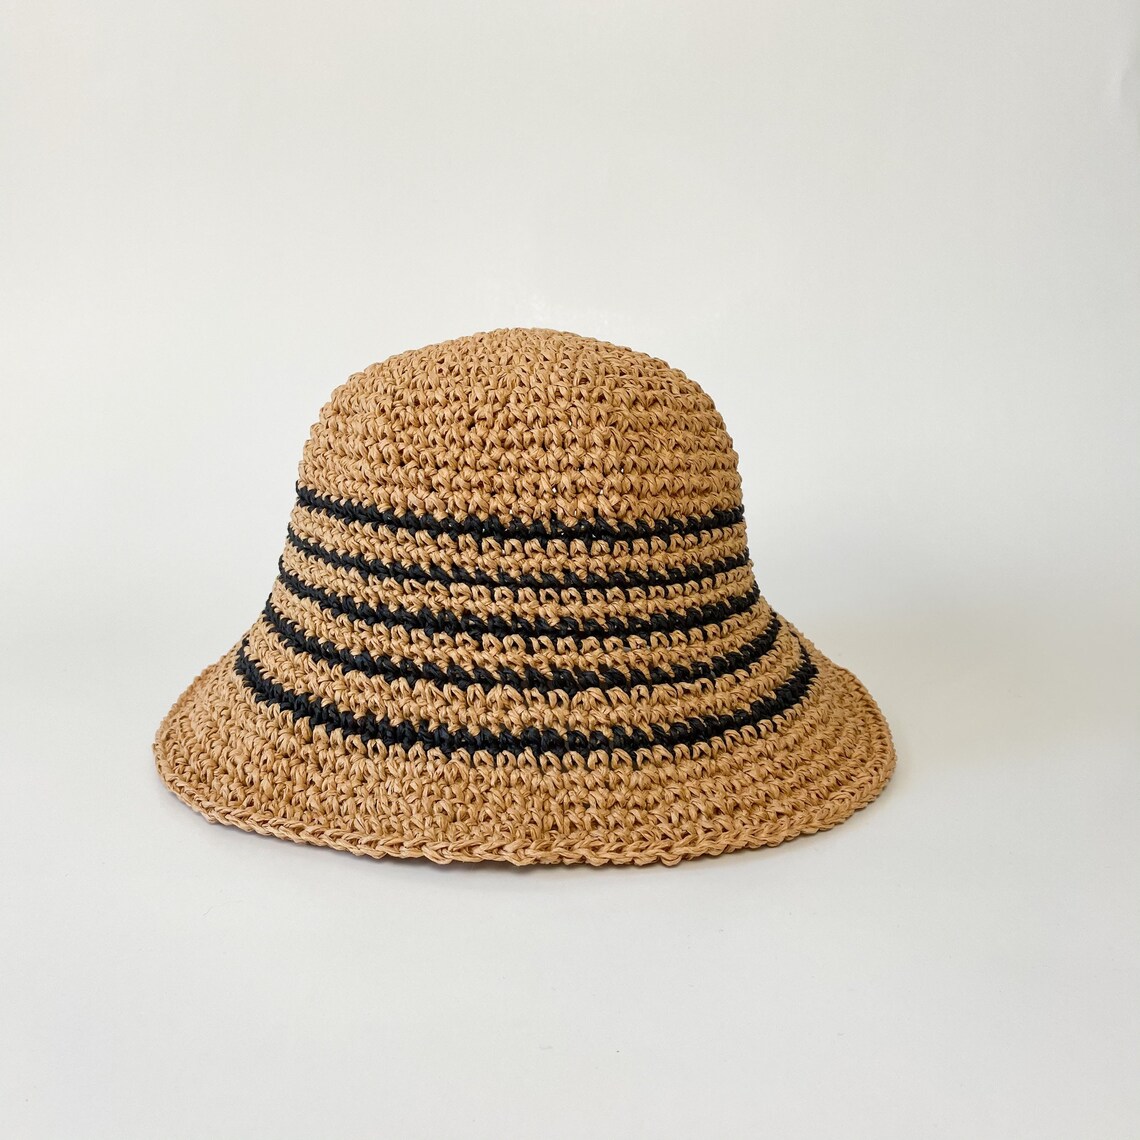 Handmade raffia vacation bucket hat summer casual straw hat | Etsy